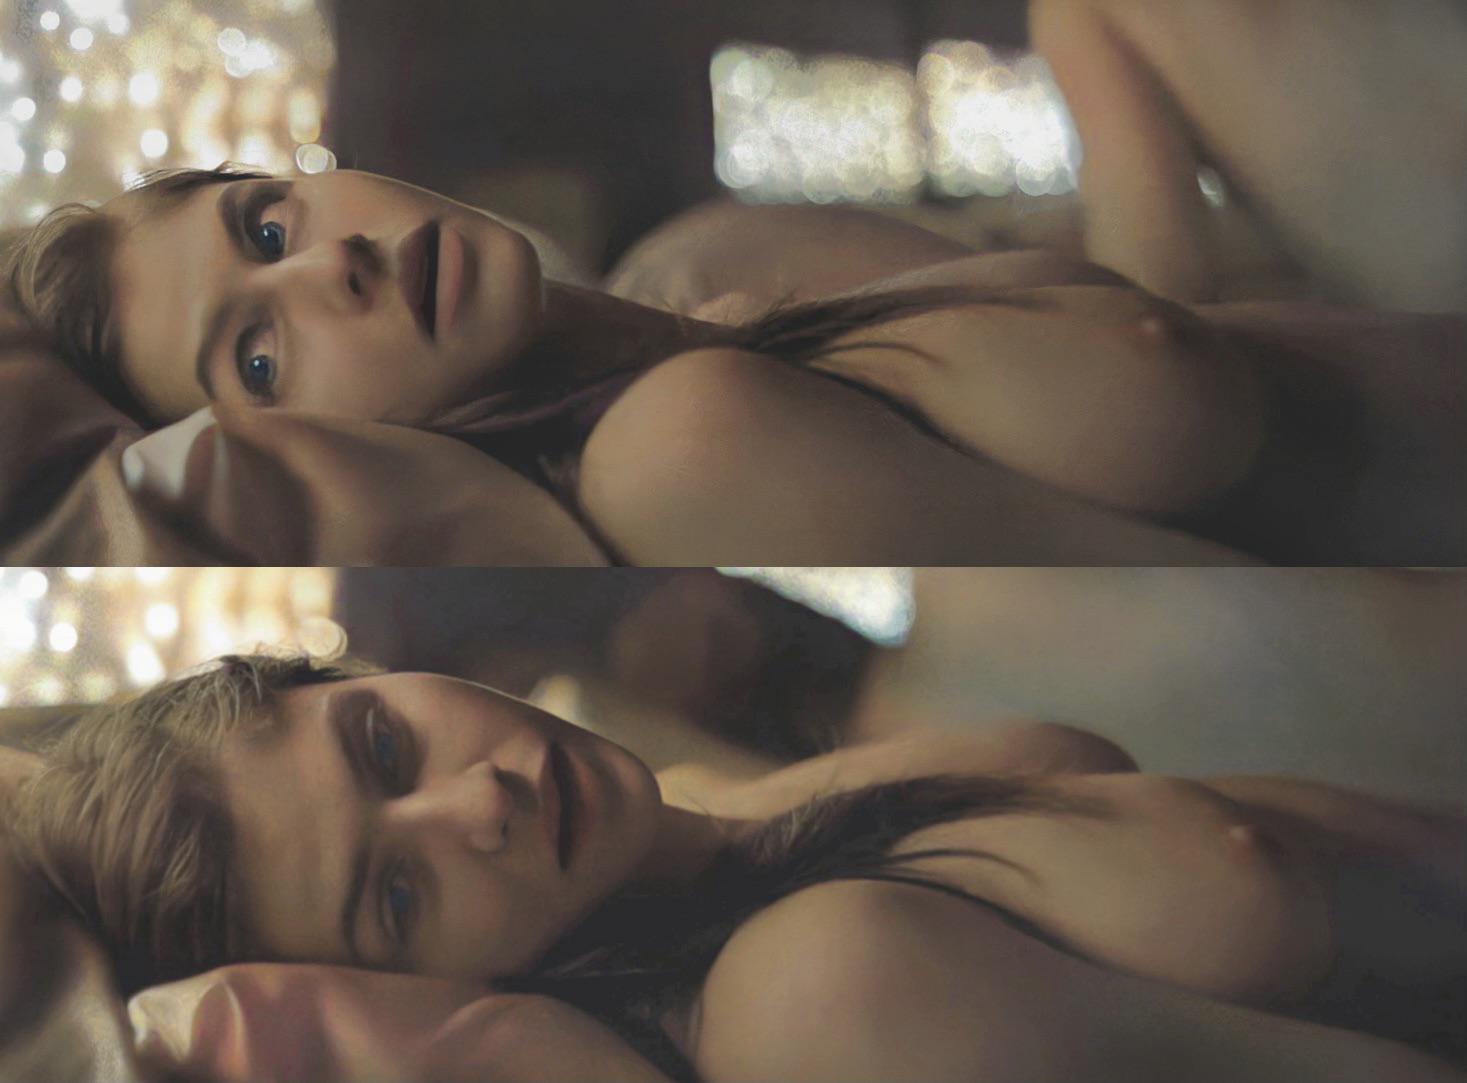 Alexandra daddario naked movie scene